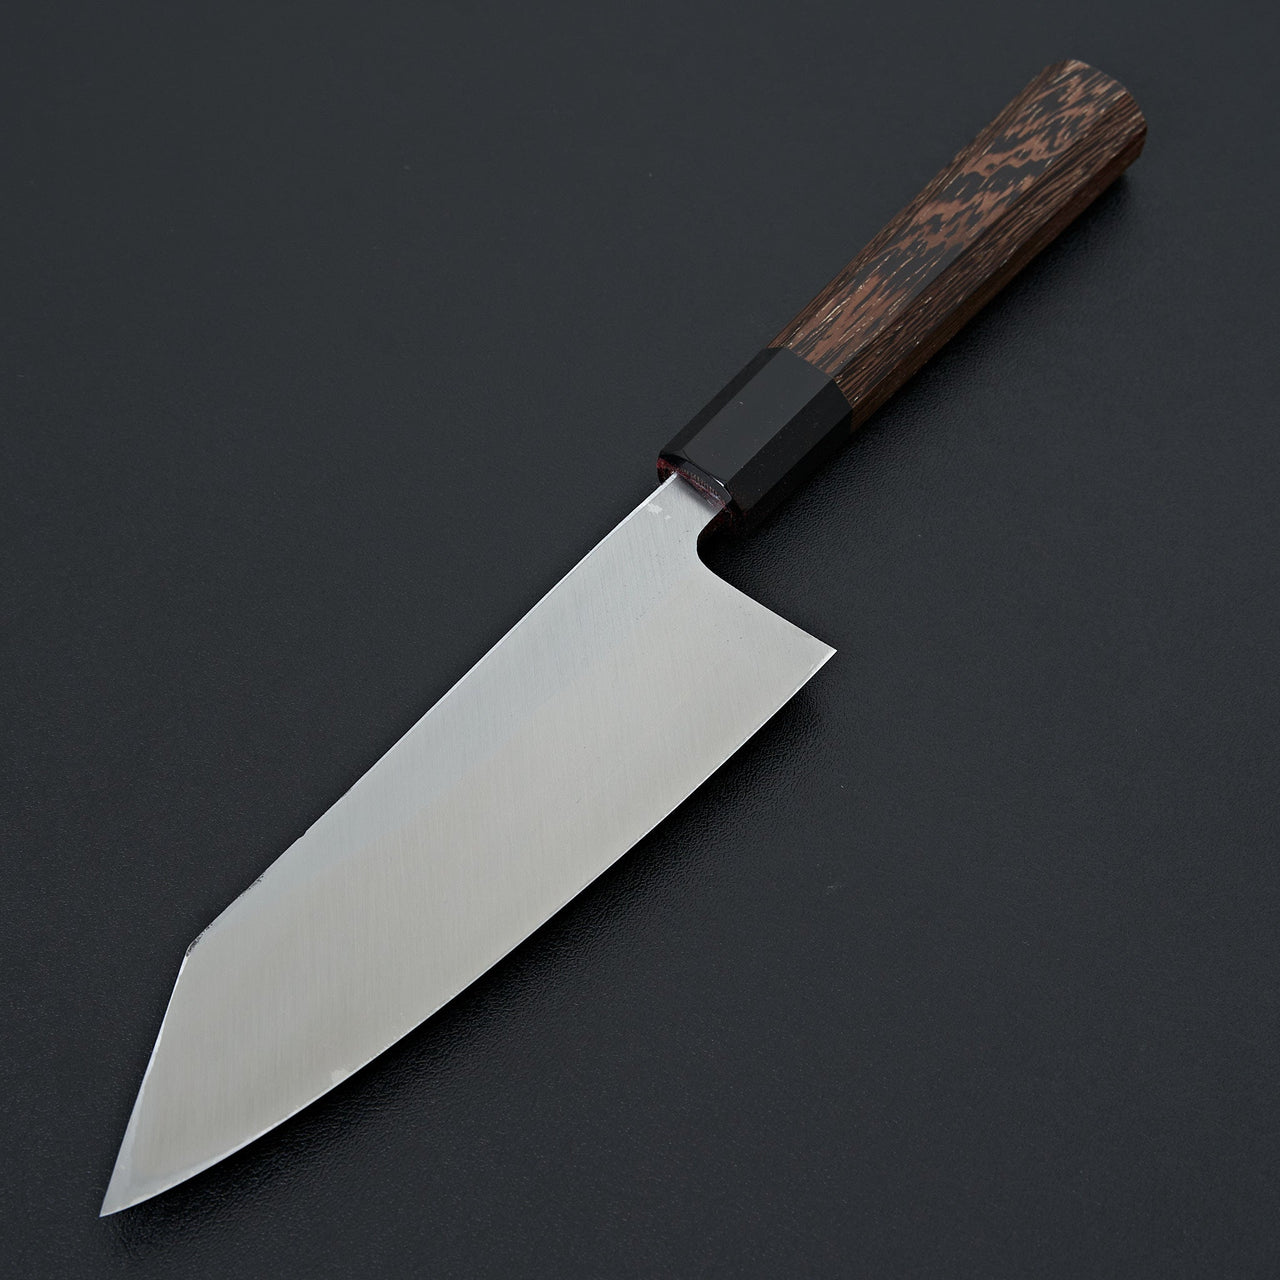 Shirasagi Kurouchi Blue 2 Tsuchime Kiritsuke Deba 165mm-Knife-Carbon Knife Co-Carbon Knife Co